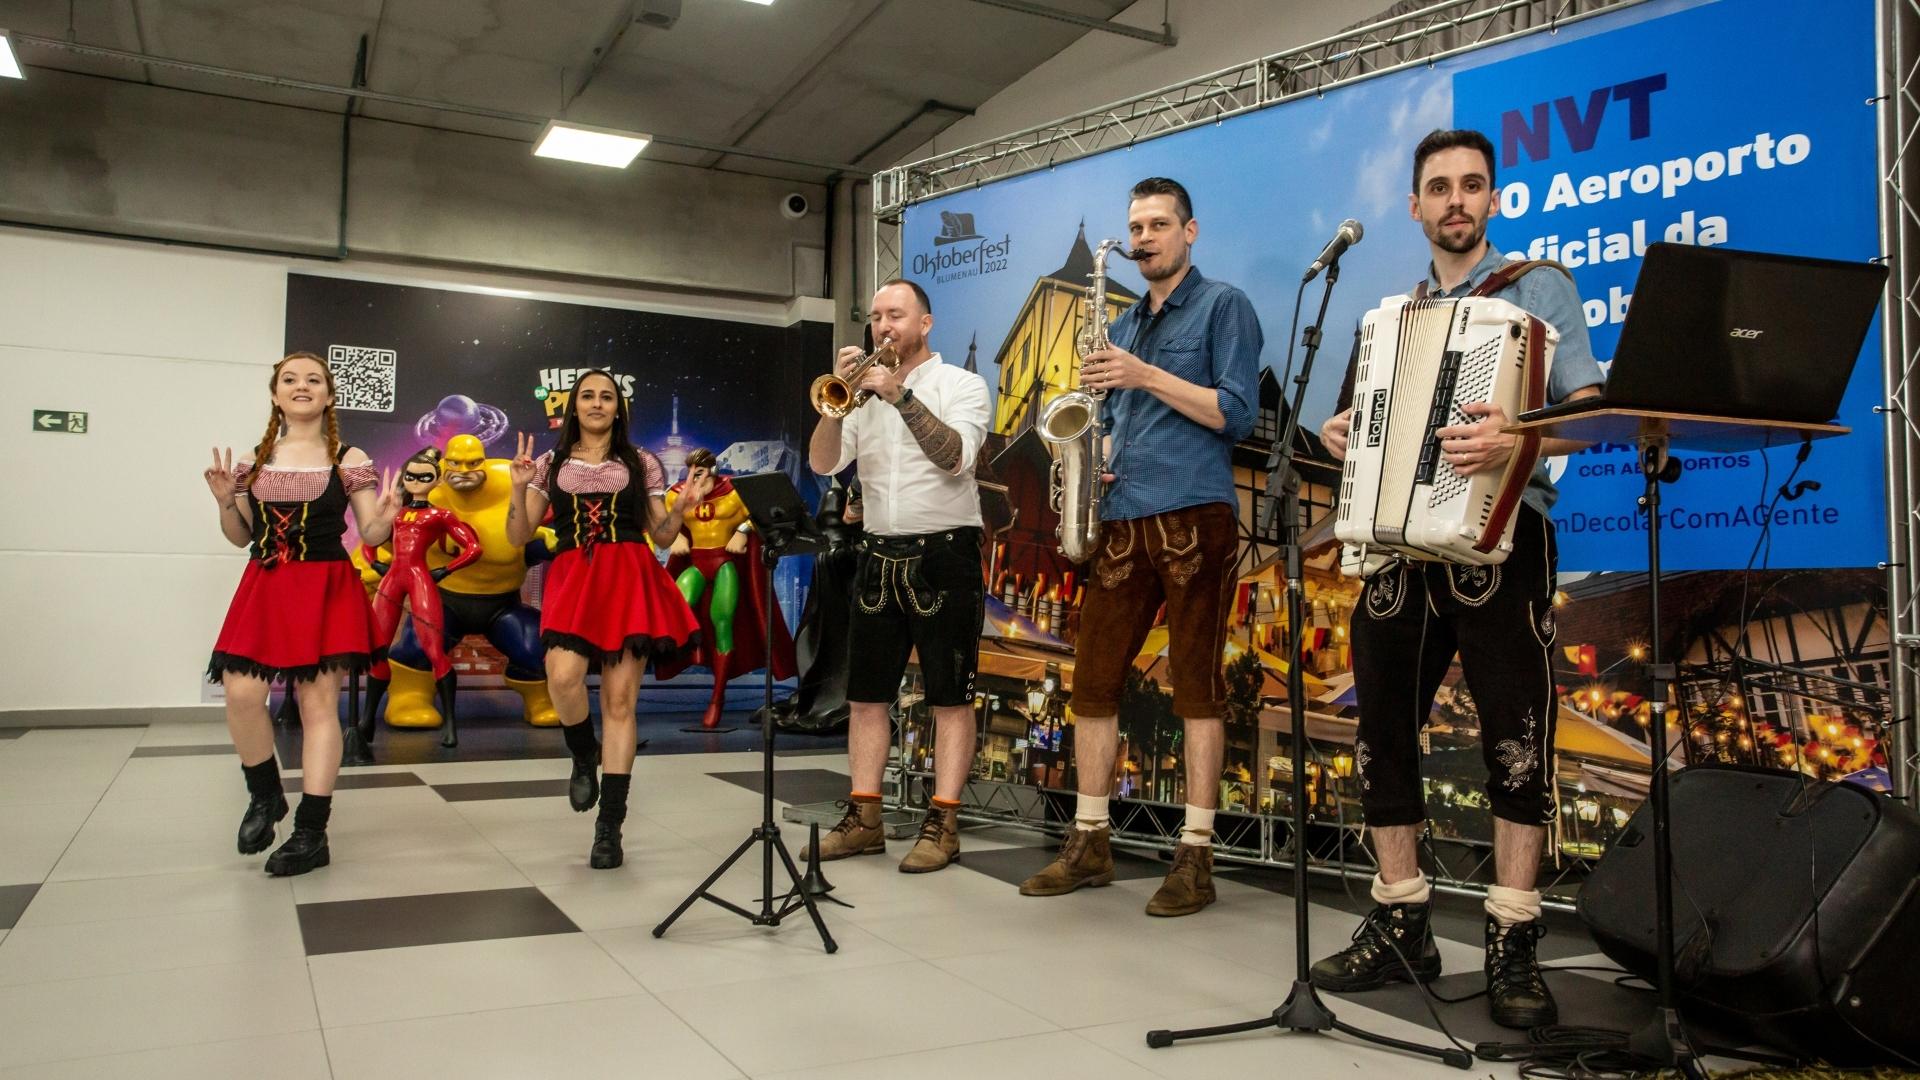 Aeroporto Internacional de Navegantes ganha mais de 30 voos extras durante Oktoberfest Blumenau | Banda típica | Conexão123